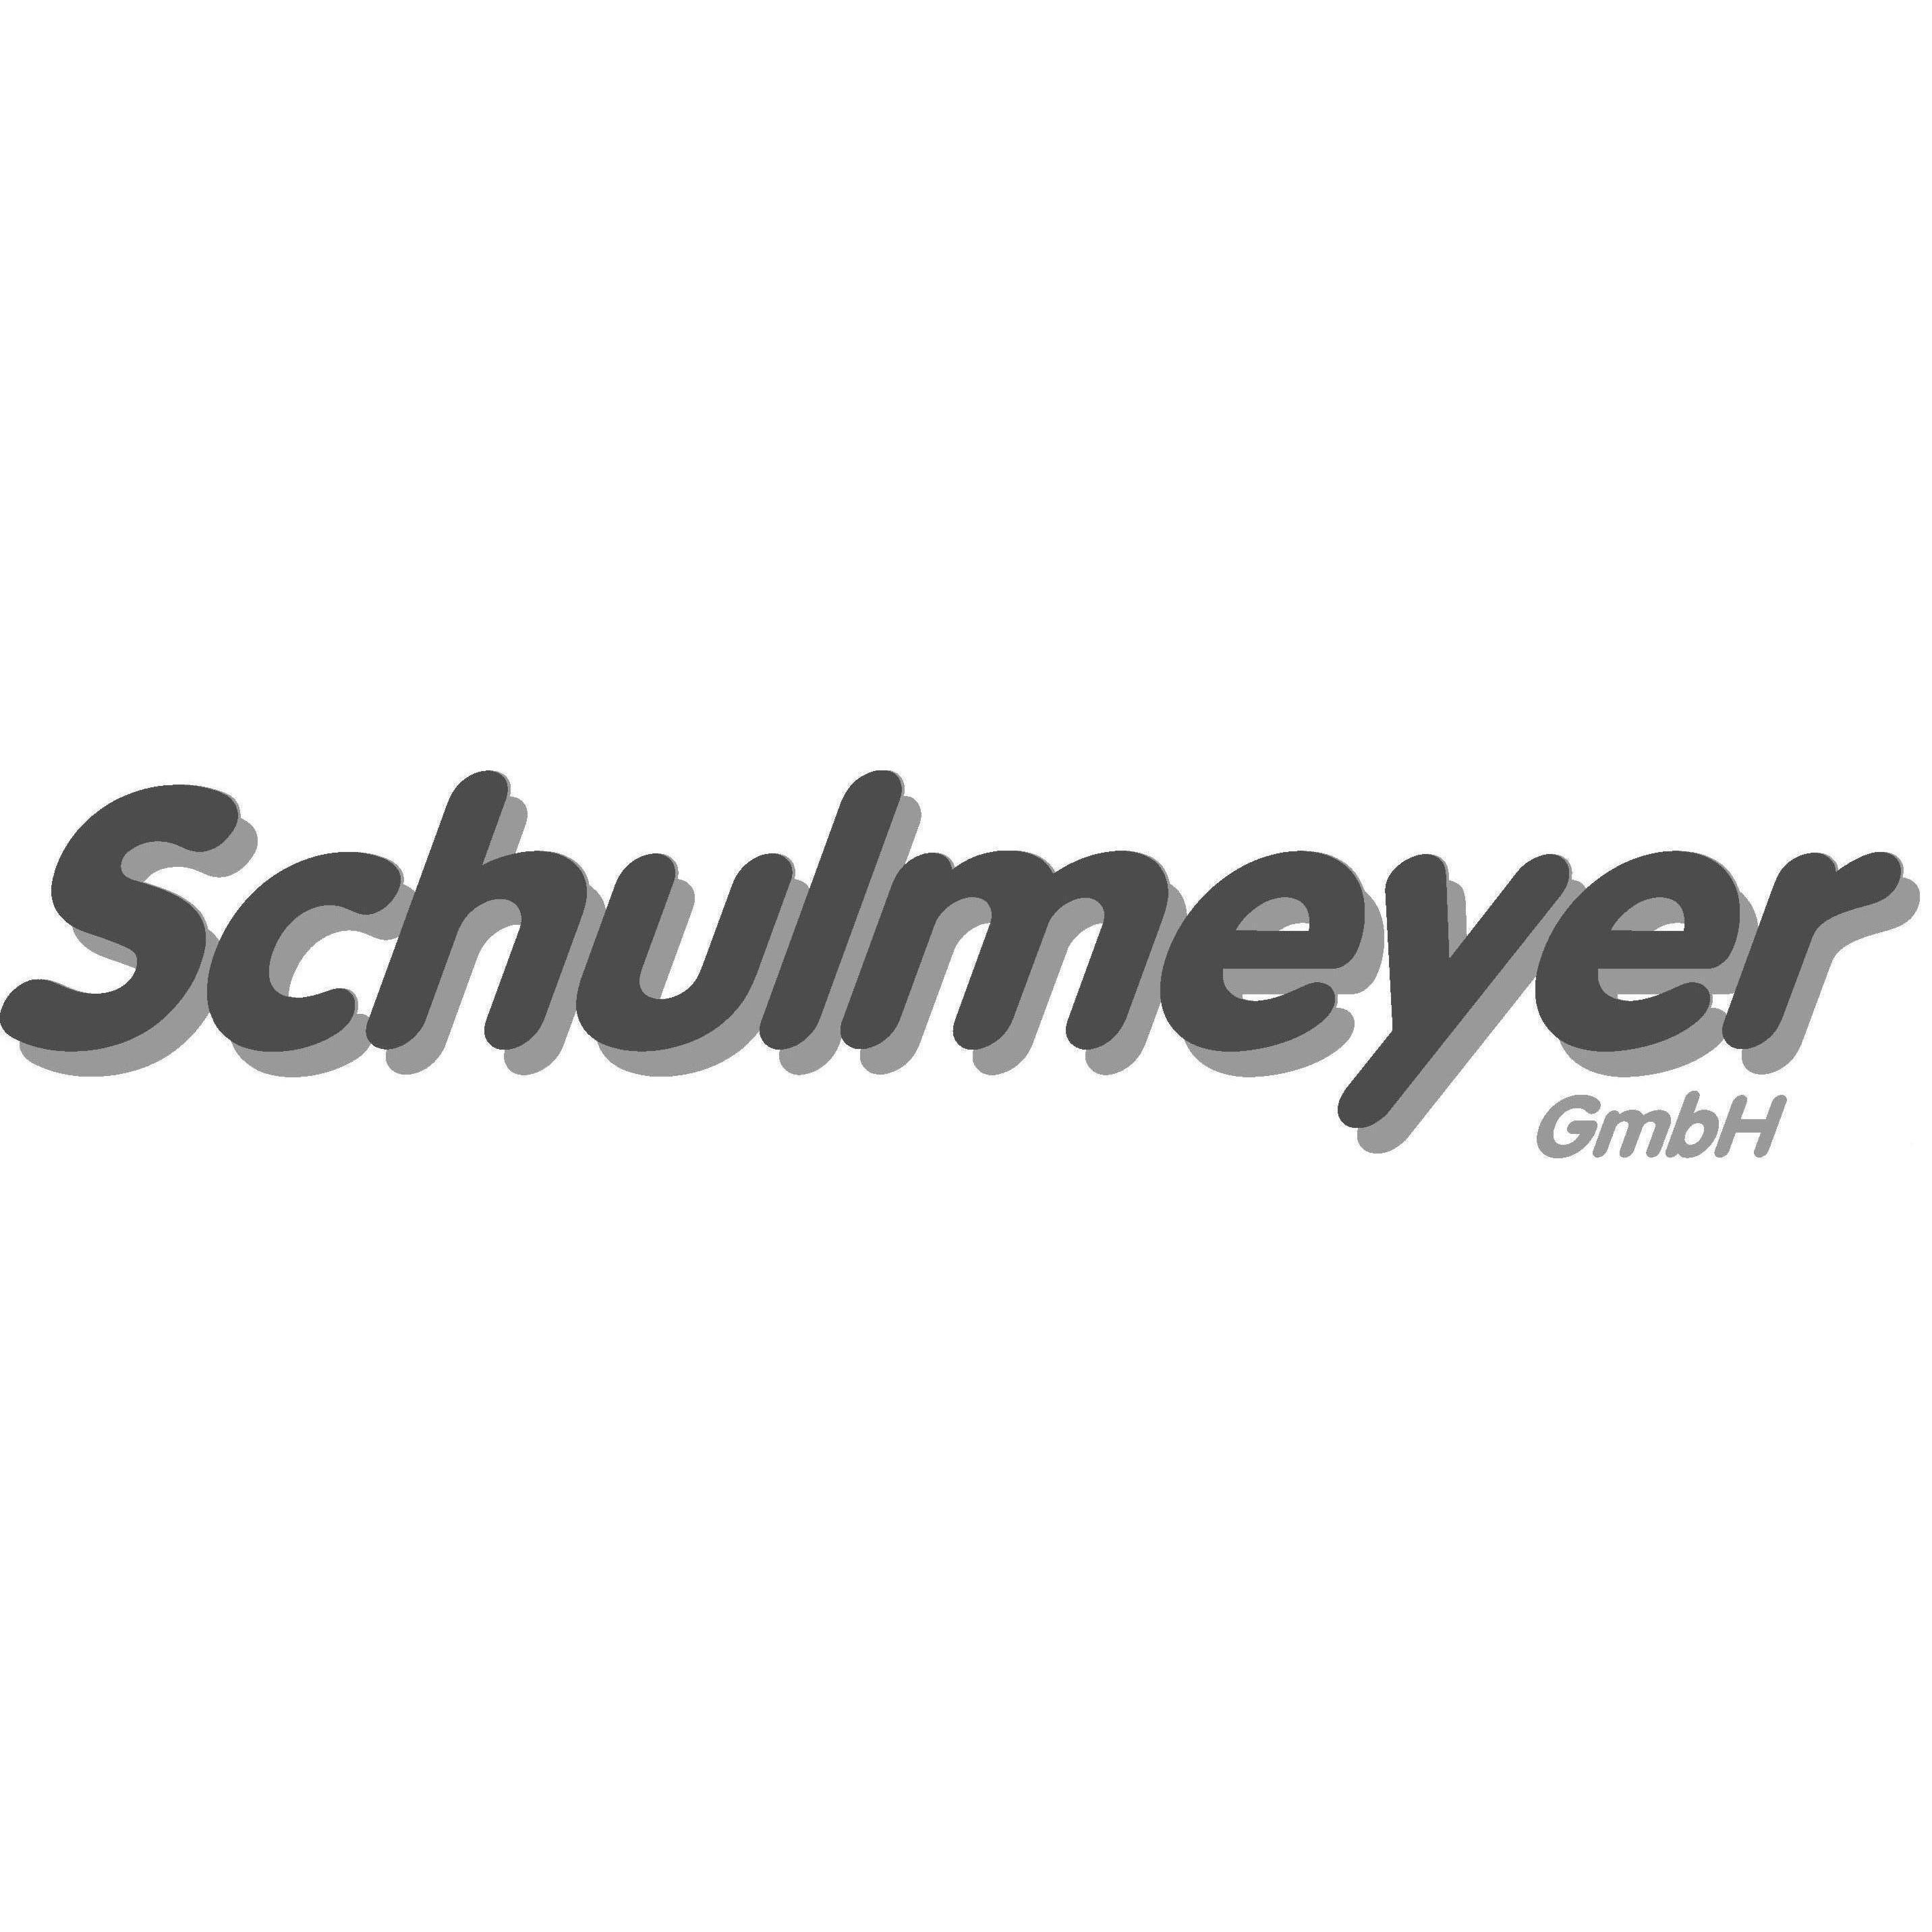 Bild zu Schulmeyer GmbH in Kamp Lintfort